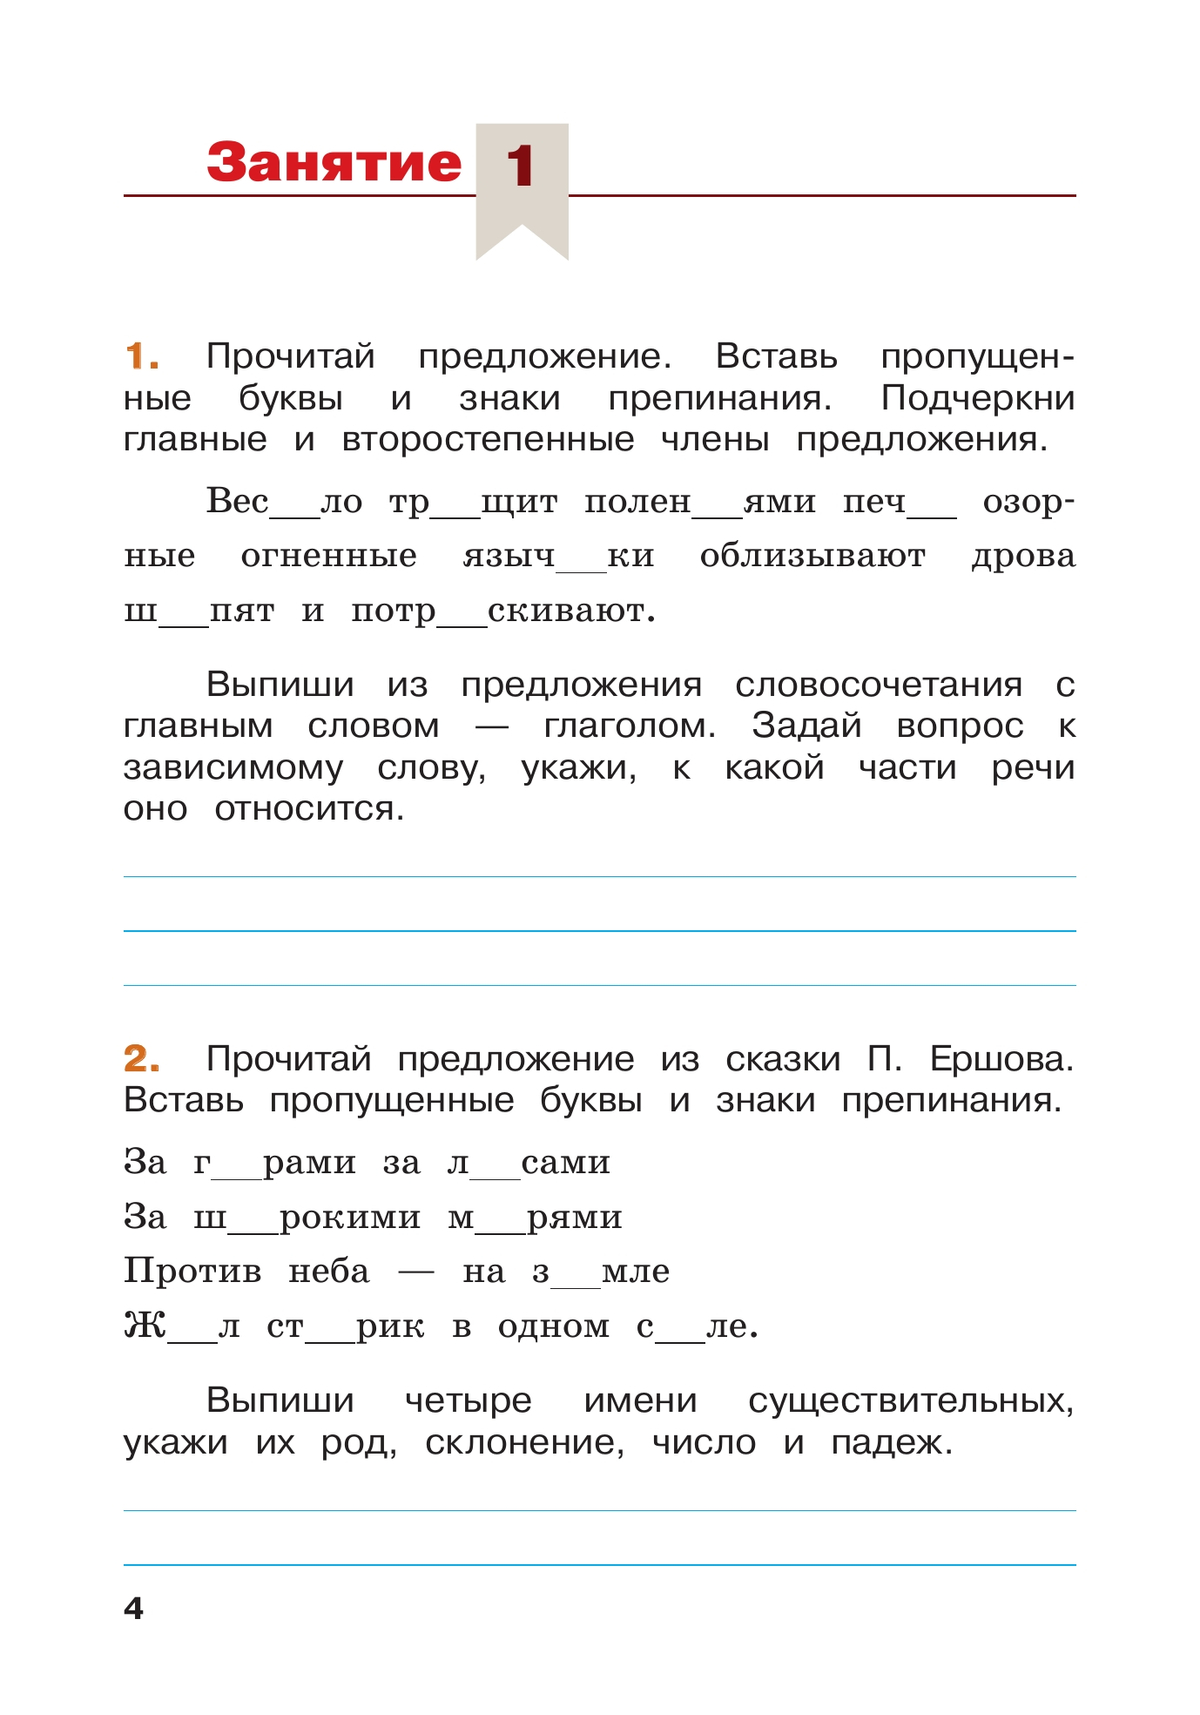 Русский язык. Летние задания. Переходим в 5-й класс 10